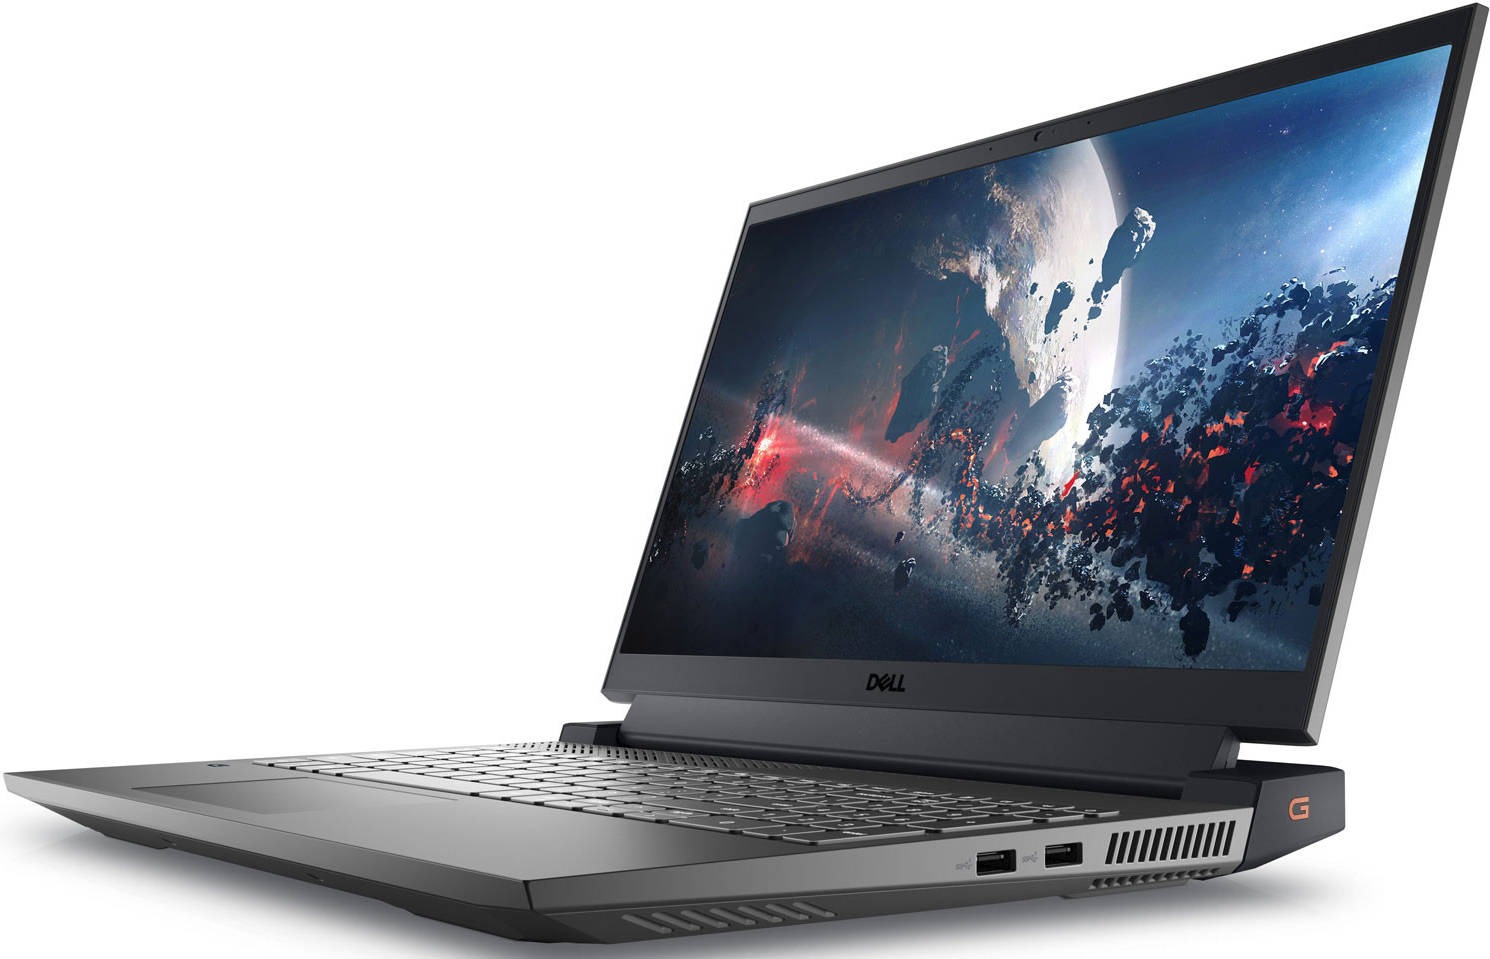 Laptop Gaming Dell Gaming 5520 Core i7-12700H 16G SSD512 VGA RTX3060 6G Màn 15.6FHD 165hz Win 11-Xám Đen (ĐANG VỀ)